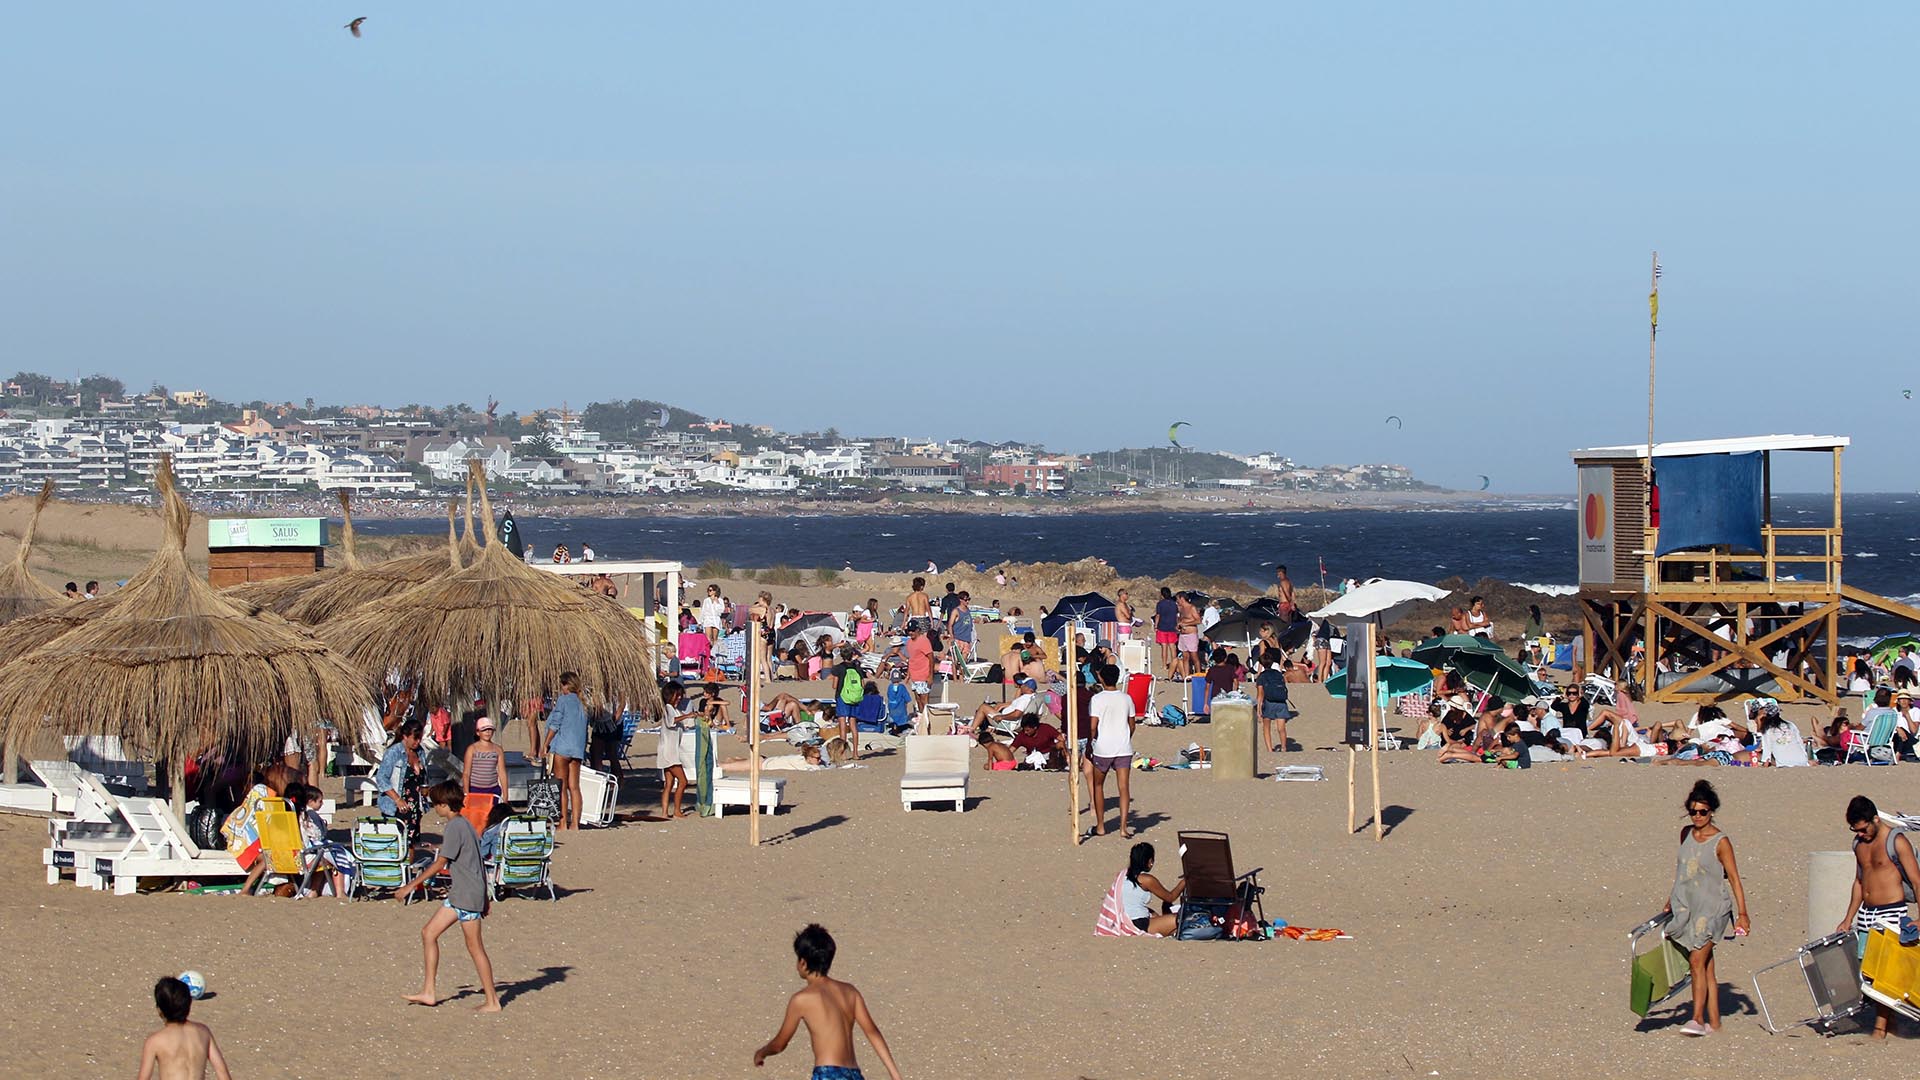 Playa Montoya es una playa uruguaya situada en la costa del océano Atlántico, en La Barra, Maldonado, Uruguay